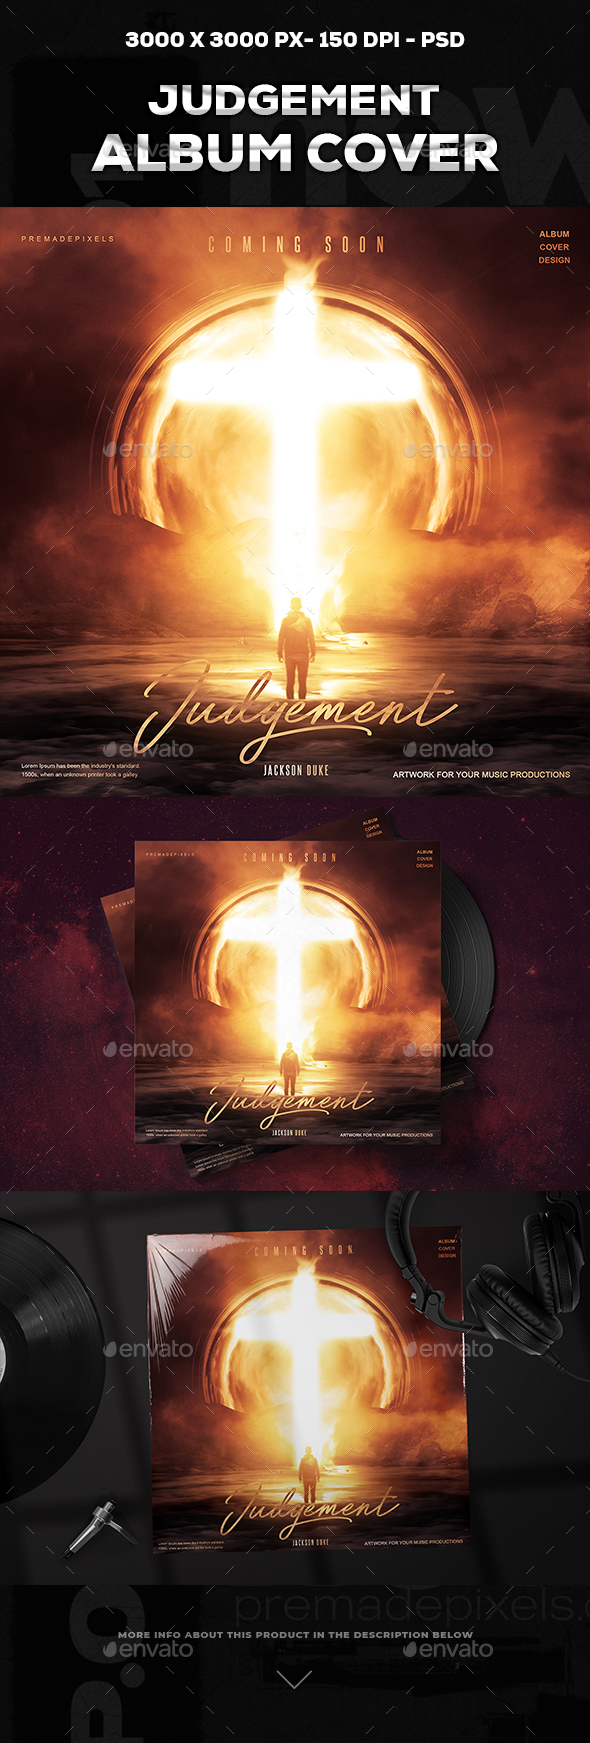 [DOWNLOAD]Judgement Album Cover